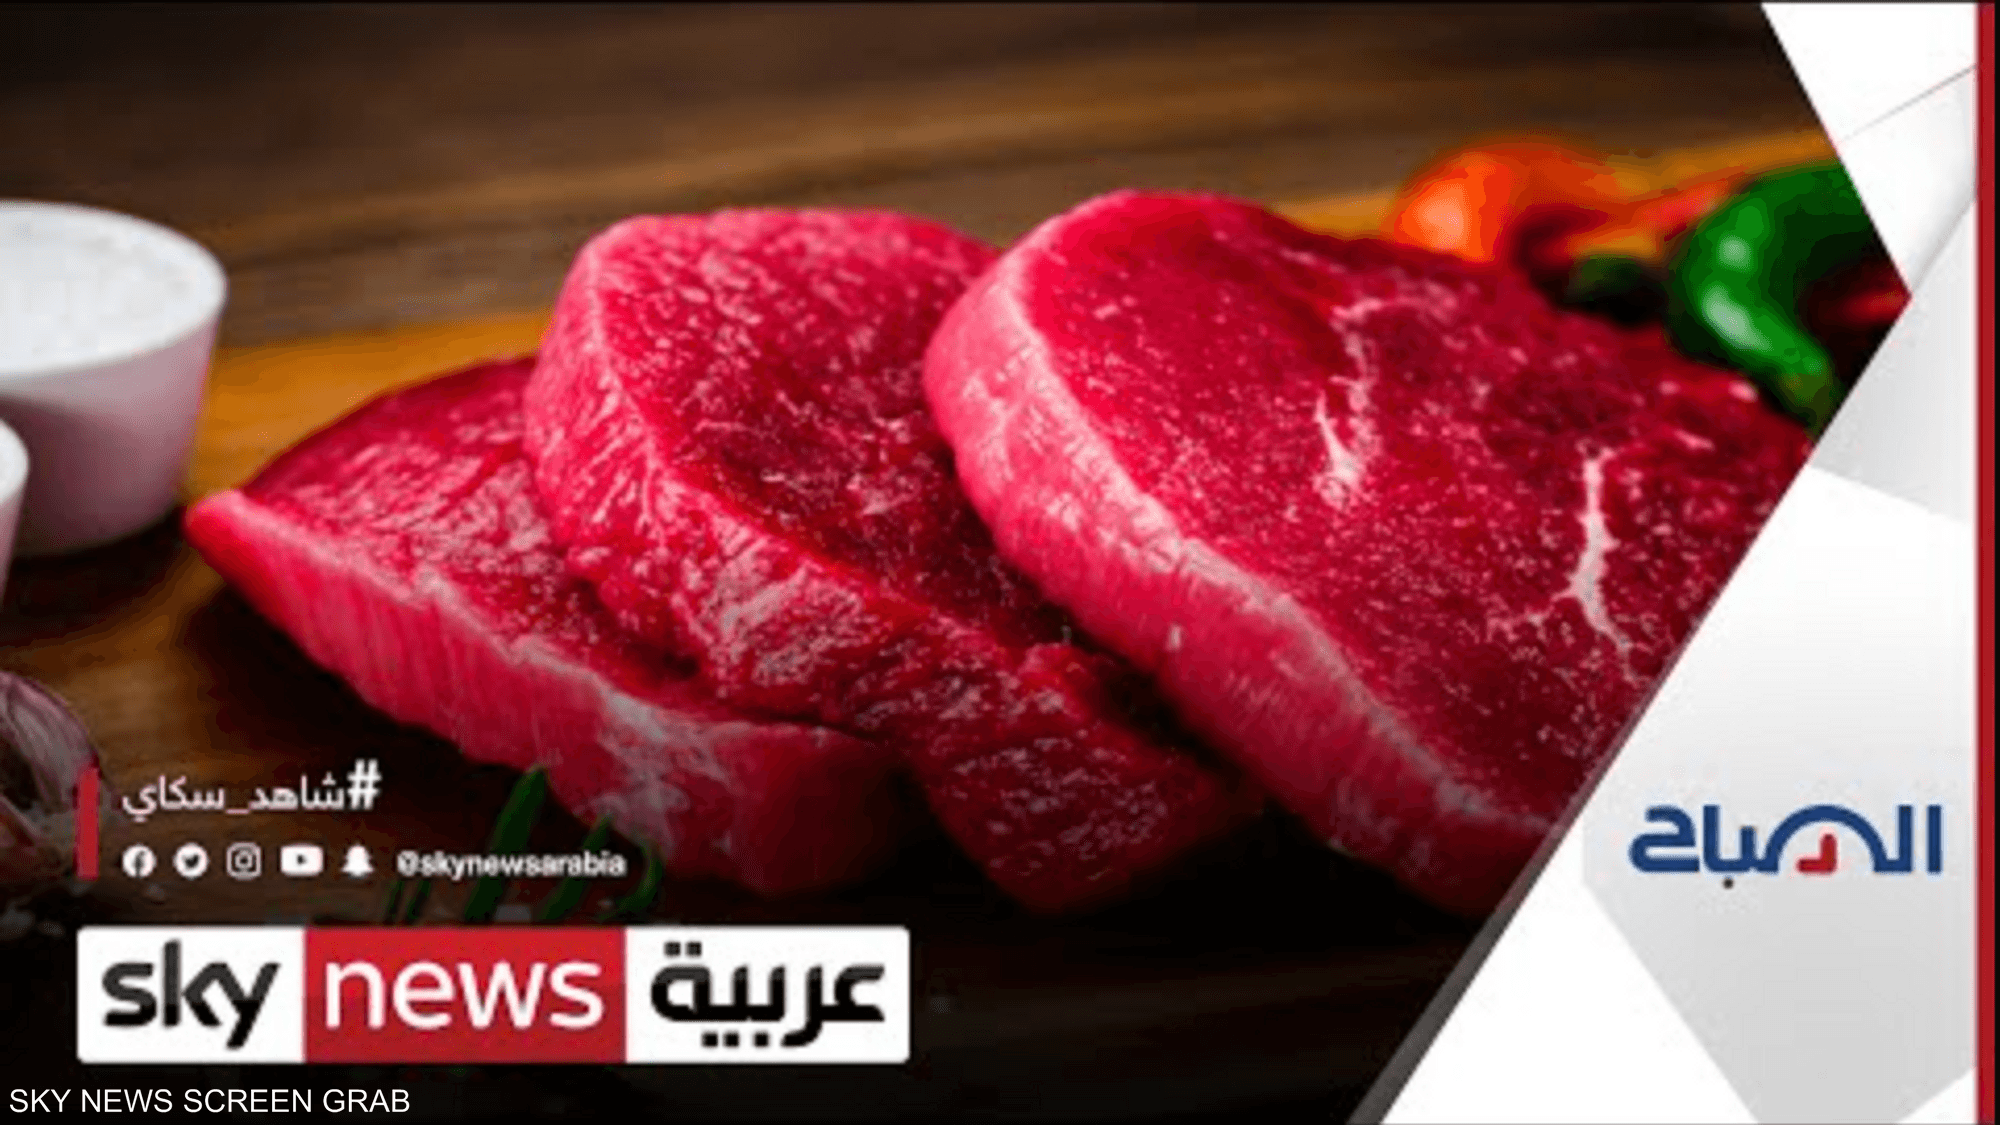 دراسة تجدد التحذير من استهلاك اللحوم الحمراء